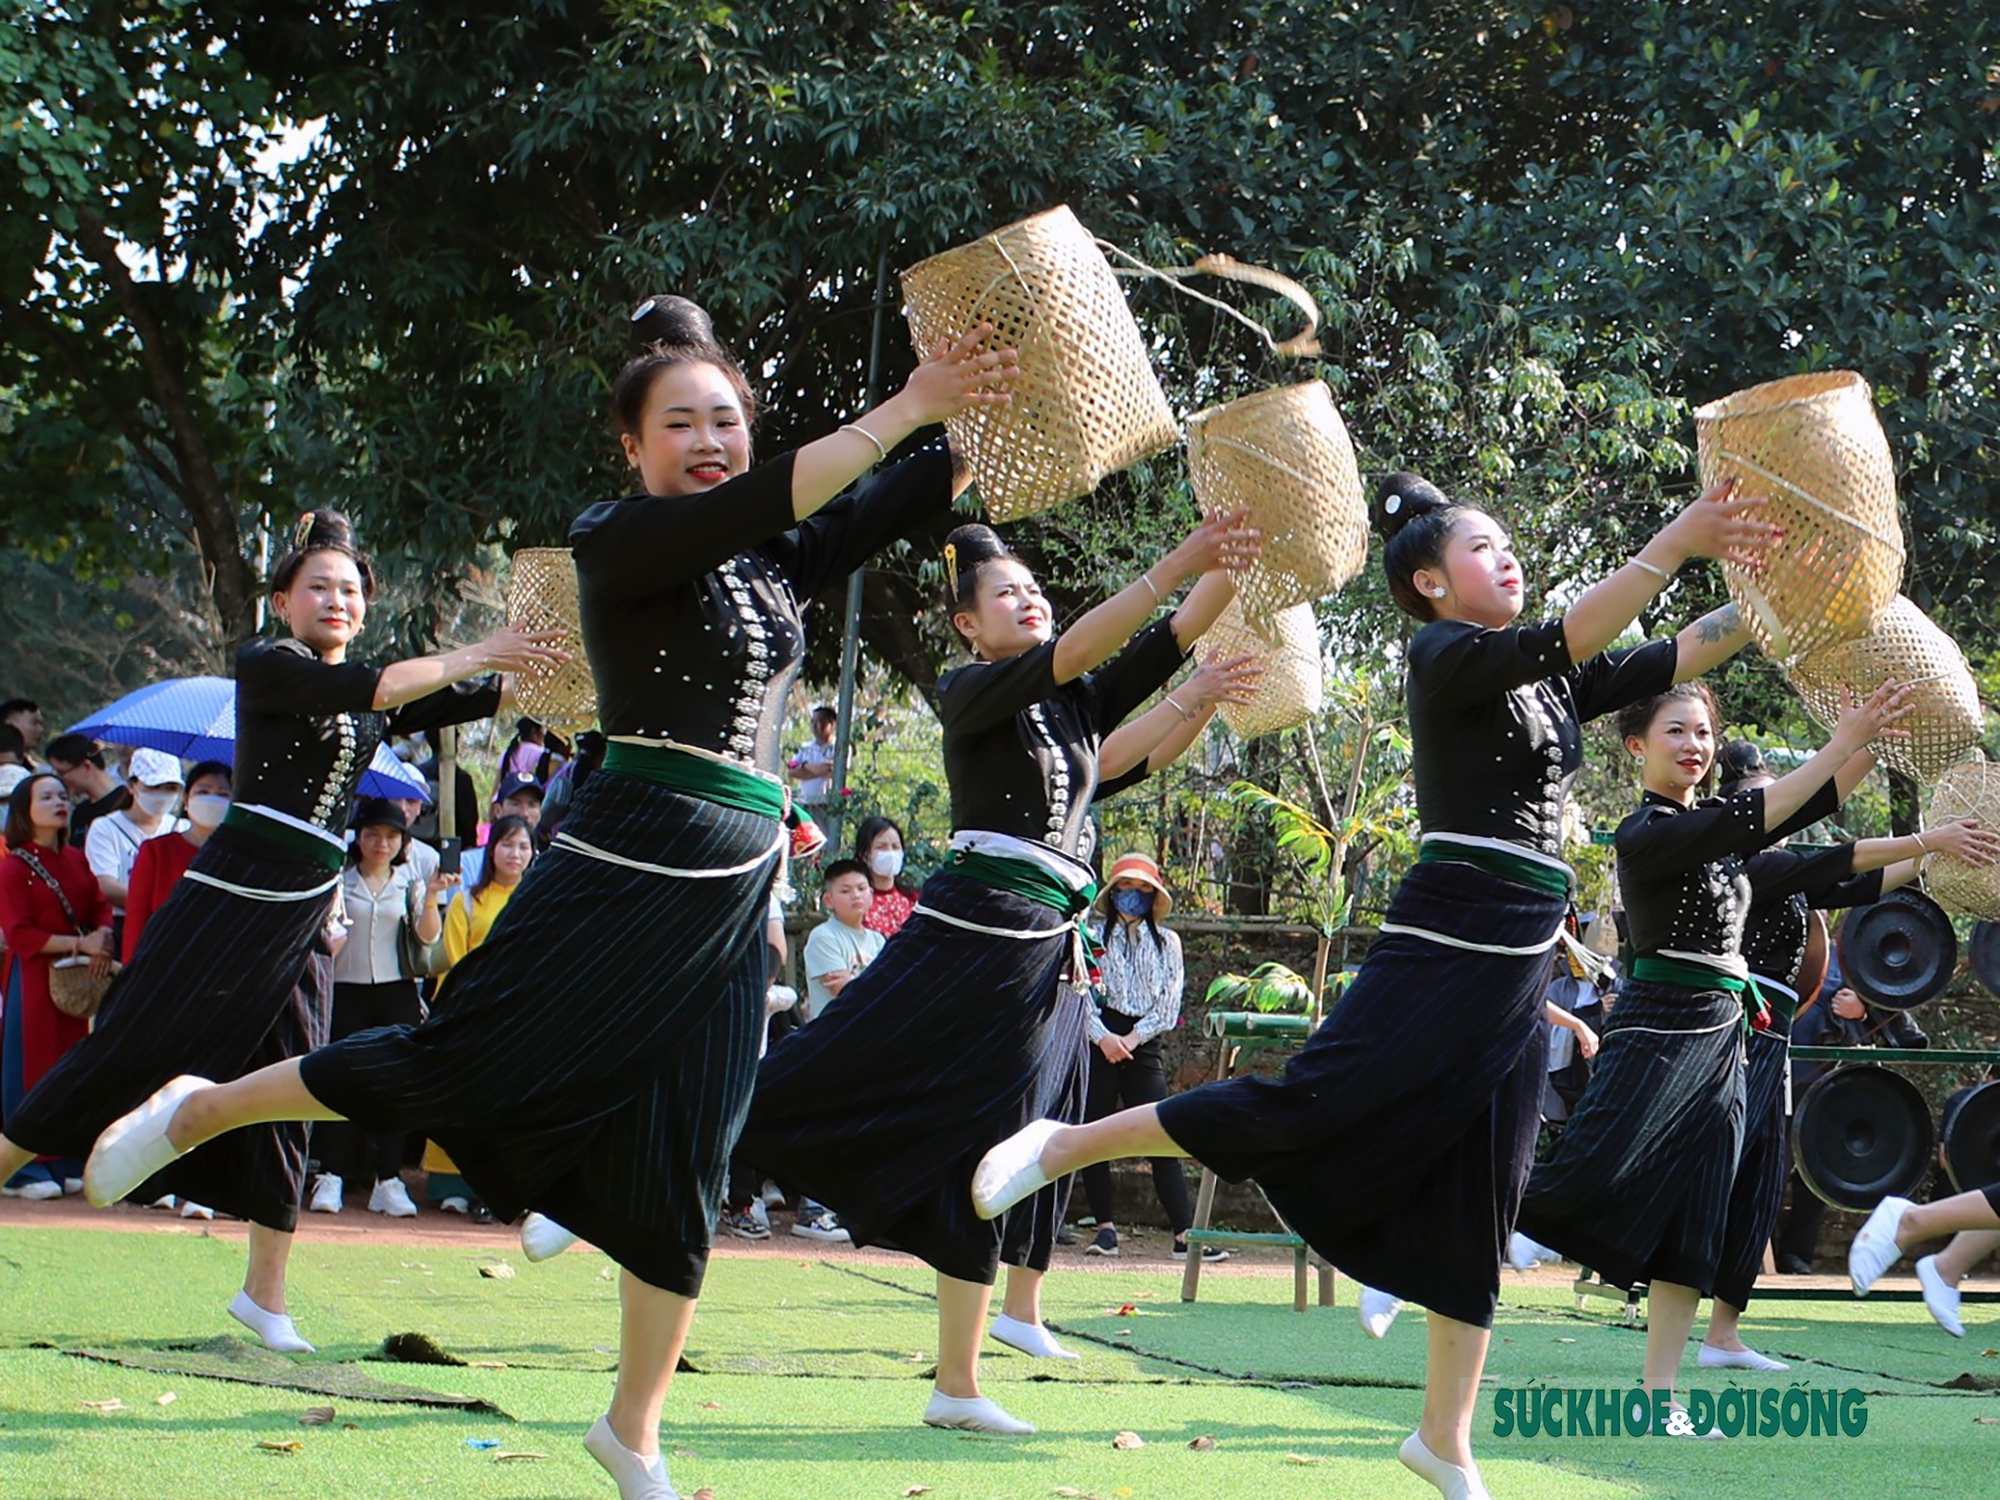 Mê mẩn điệu múa xòe Thái của các cô gái đến từ tỉnh Sơn La - Ảnh 6.